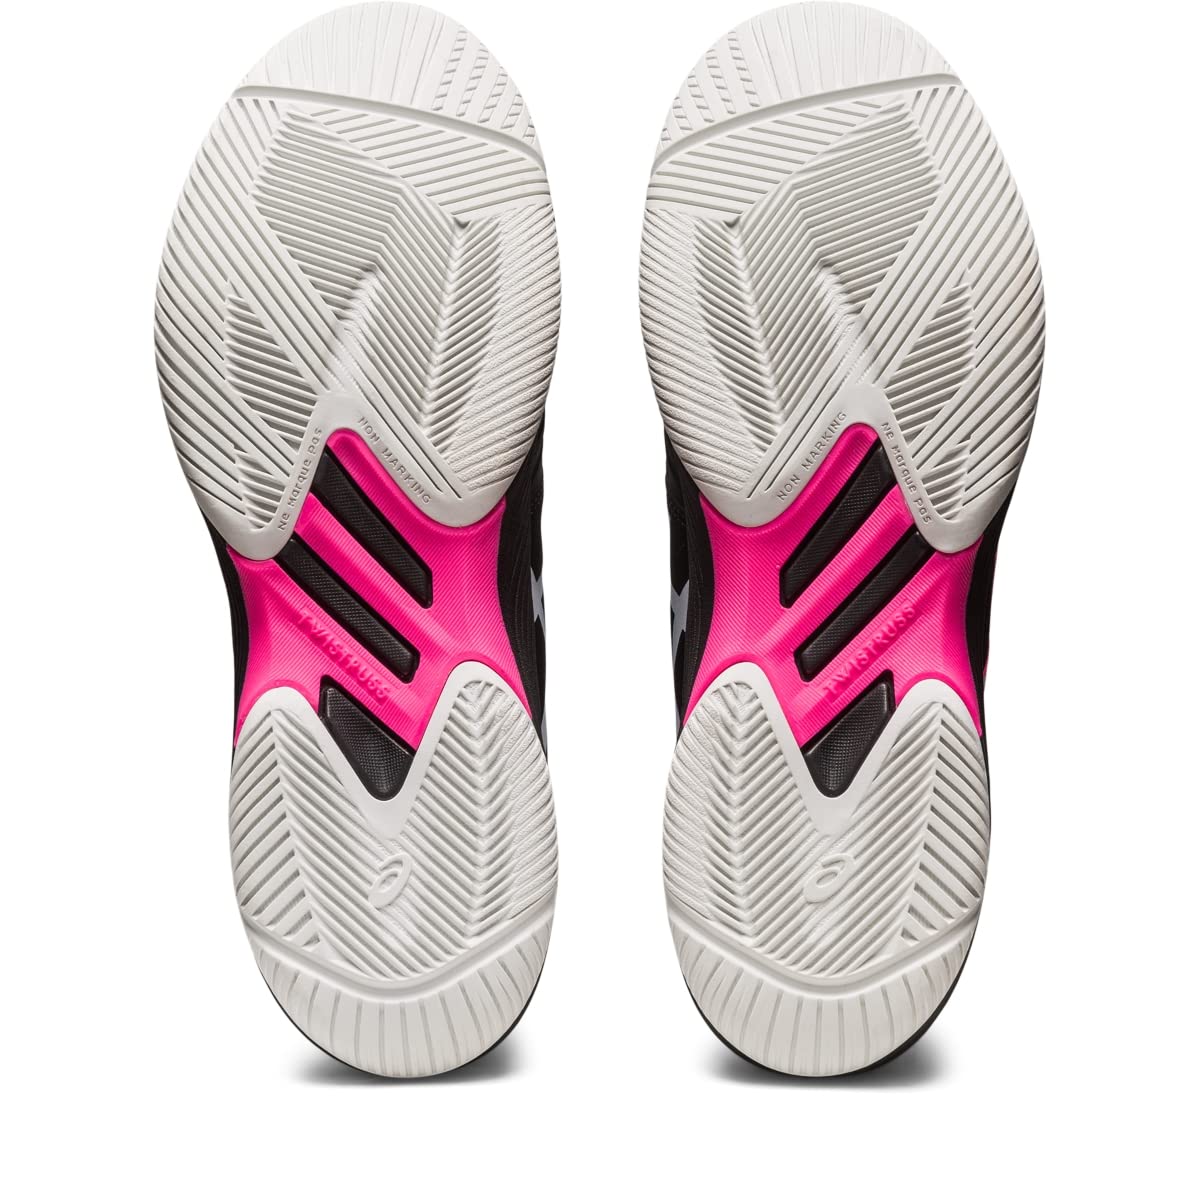 ASICS Men's Solution Swift FlyteFoam Tennis Shoes